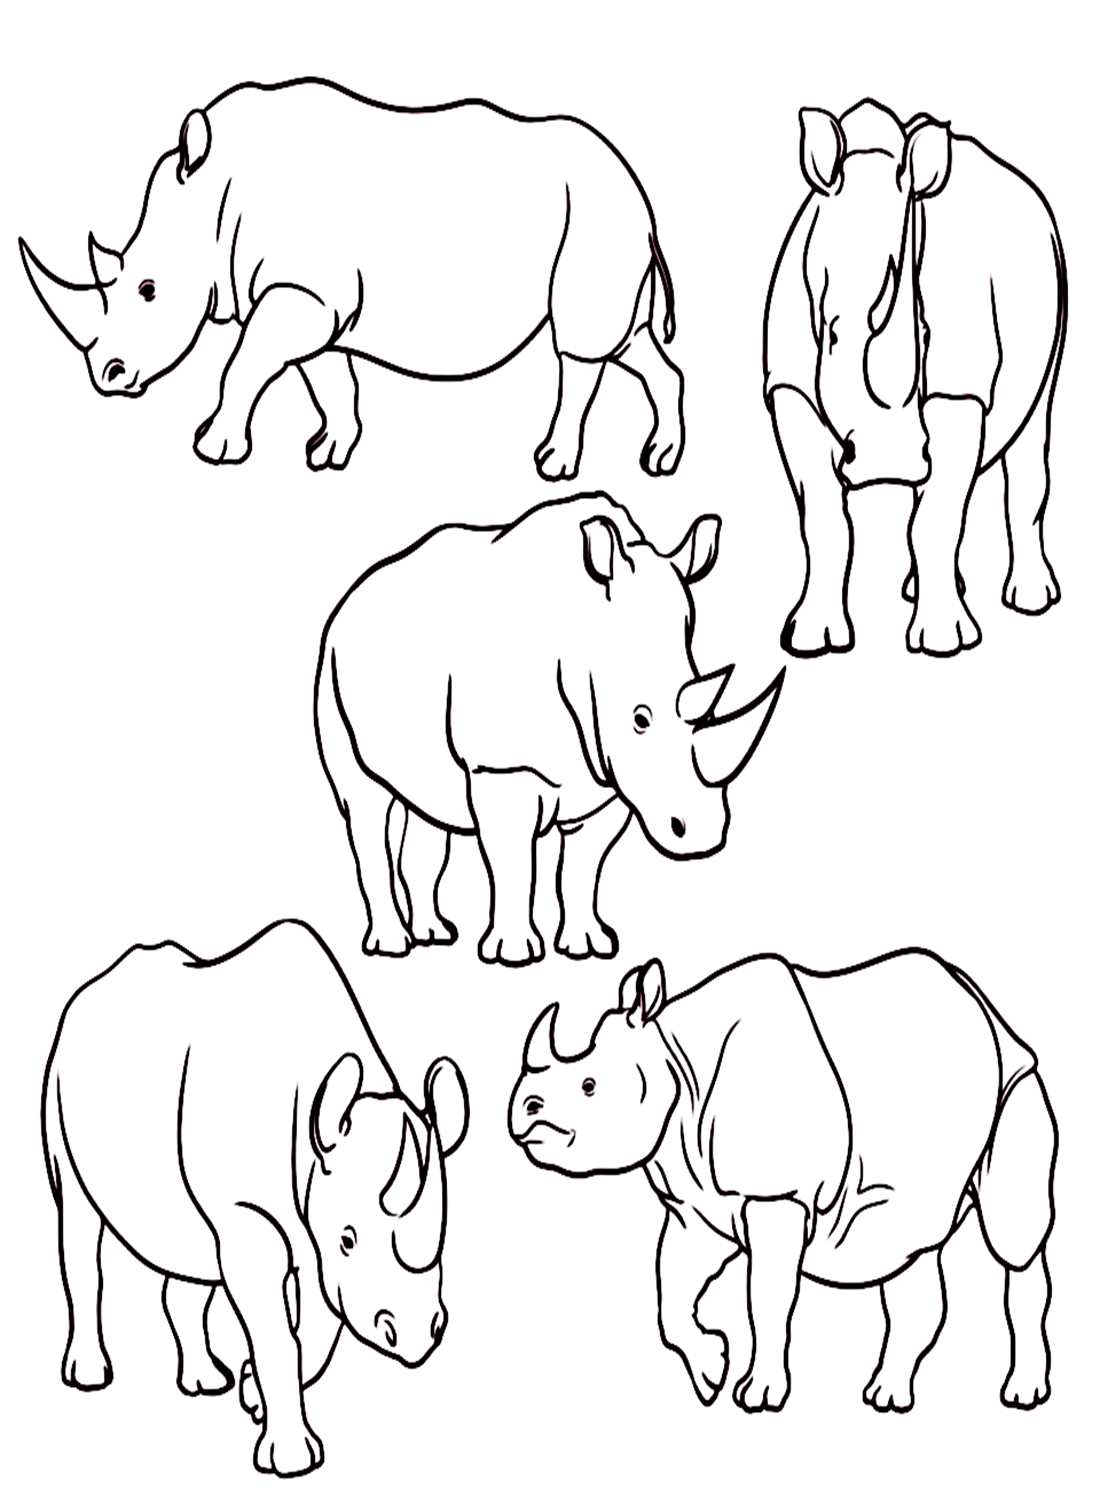 قطيع وحيد القرن من وحيد القرن